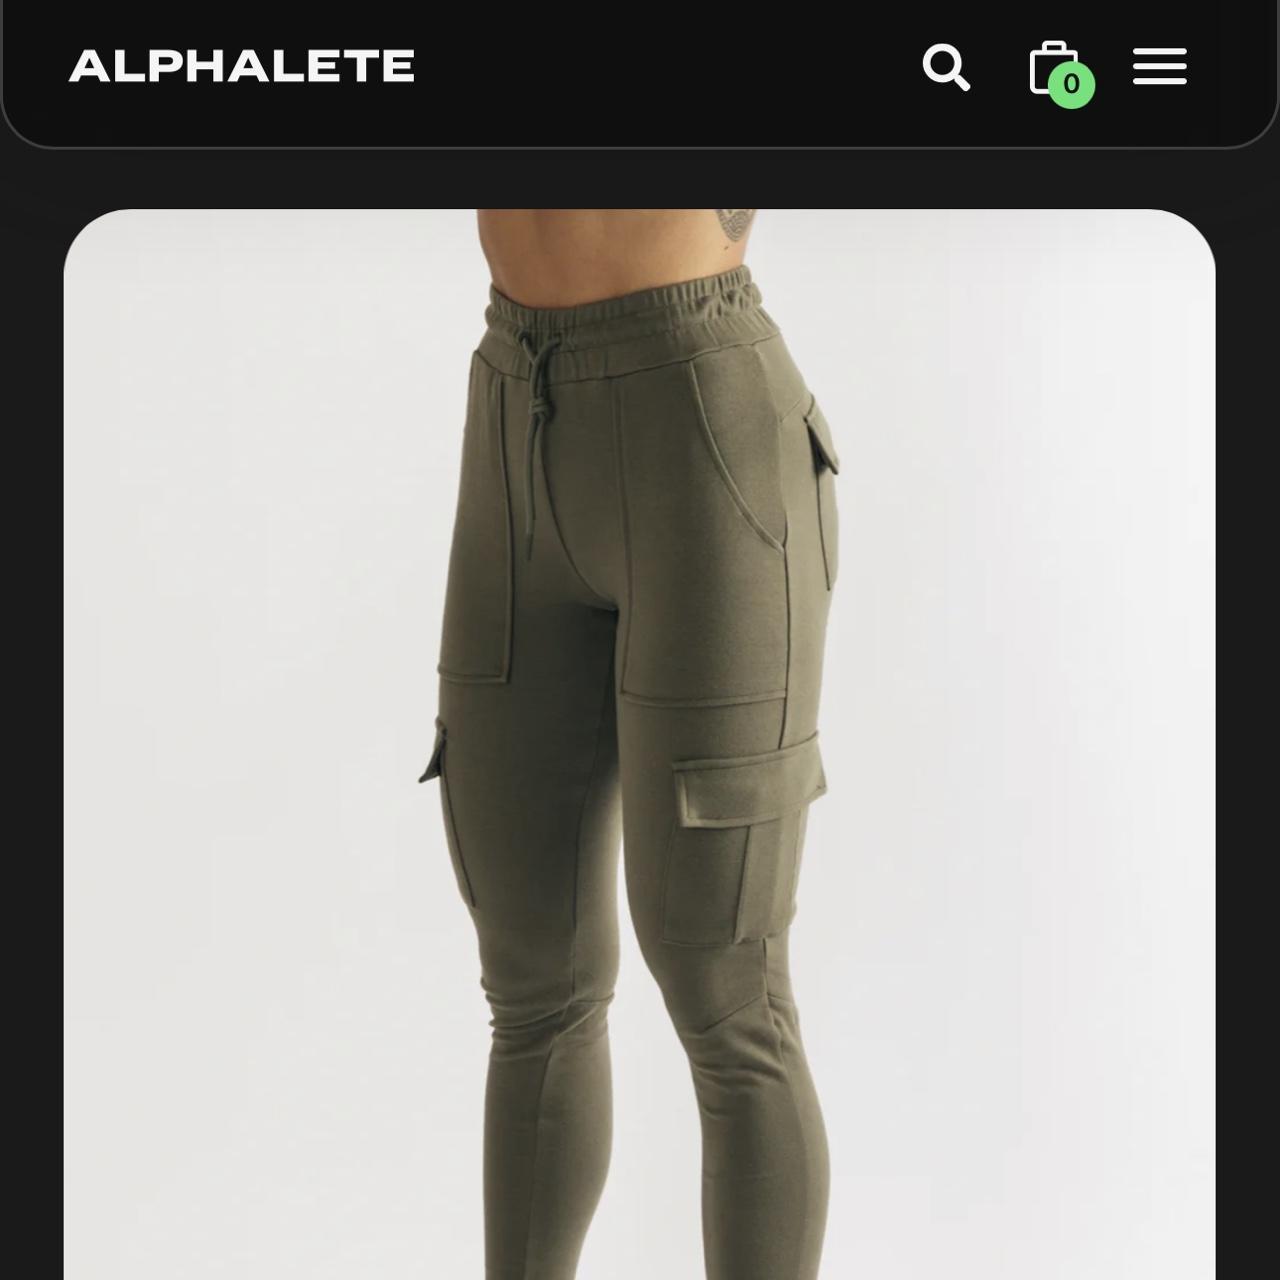 Alphalete Pants